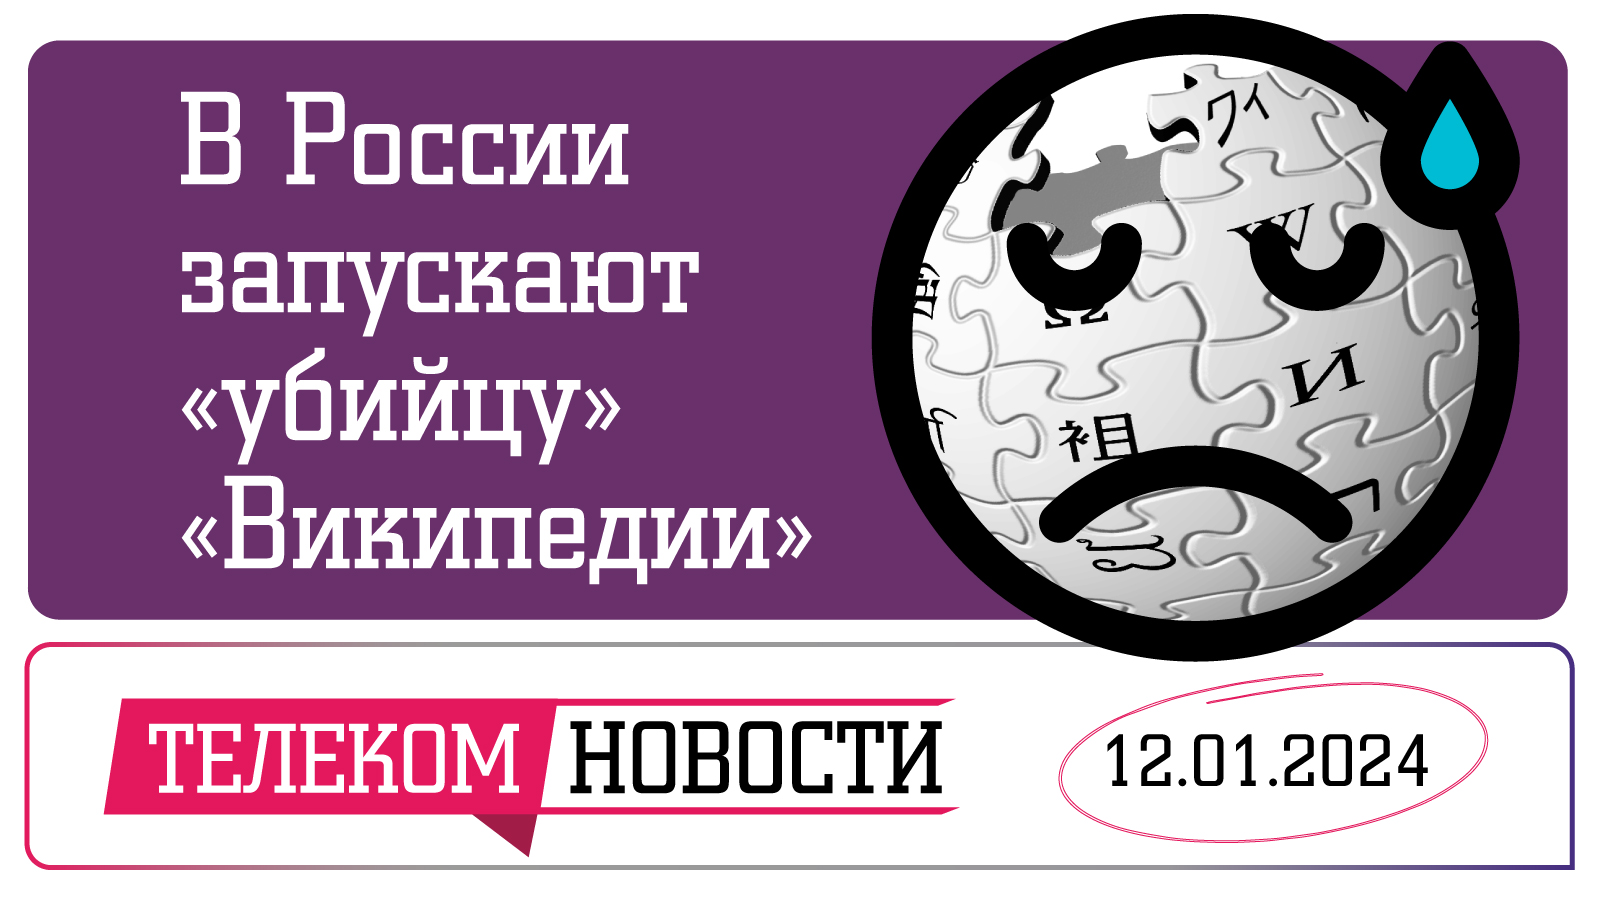 «Телеспутник-Экспресс»: в России запускают «убийцу» «Википедии» и тестируют СБП в метро